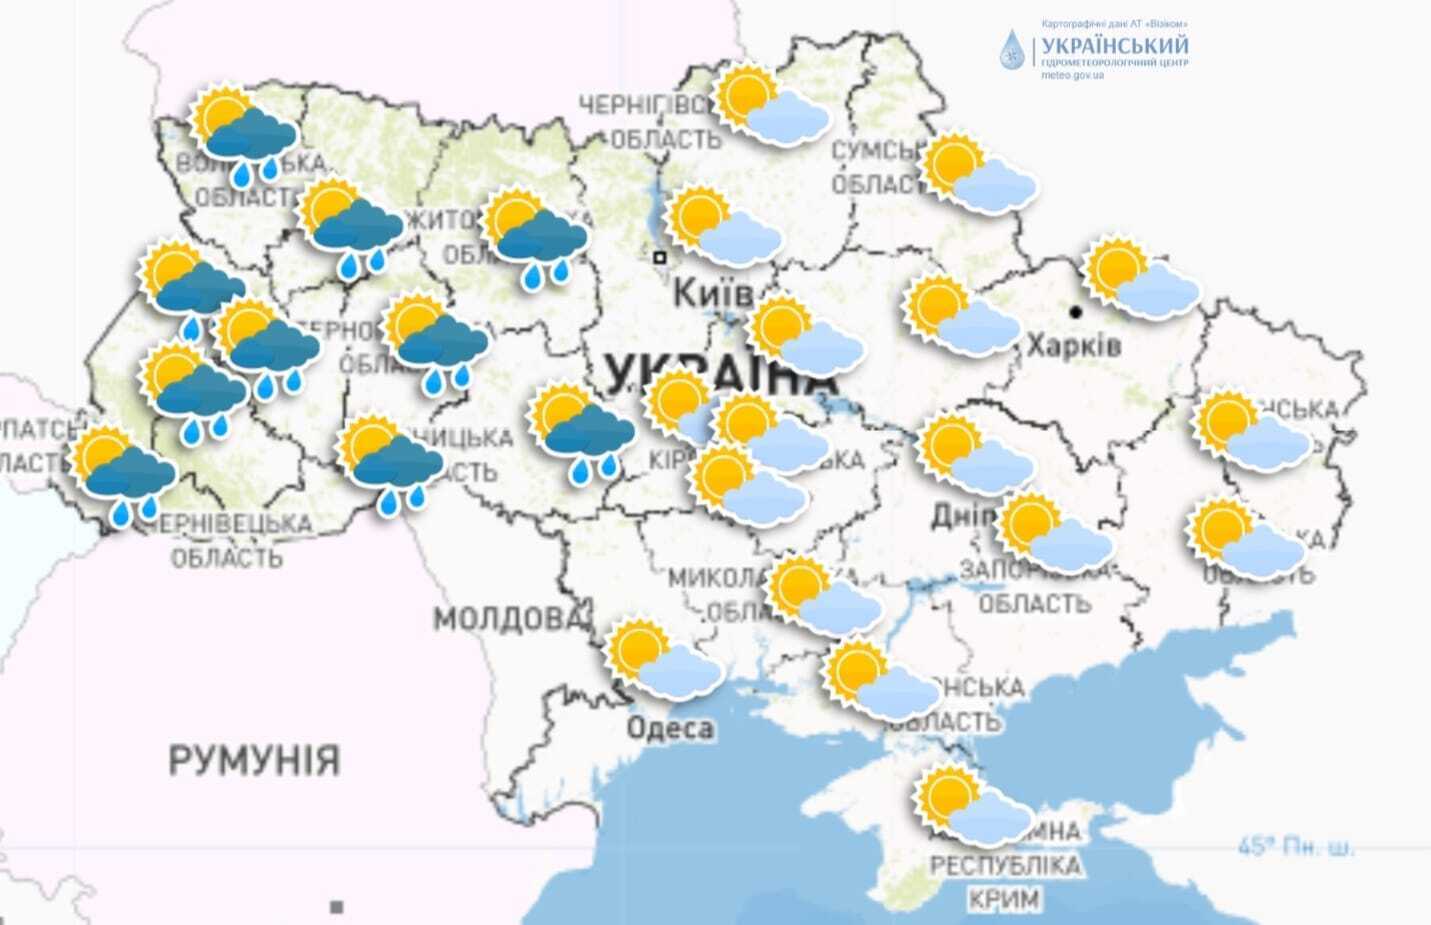 Невеликі опади можливі лише у західній частині України